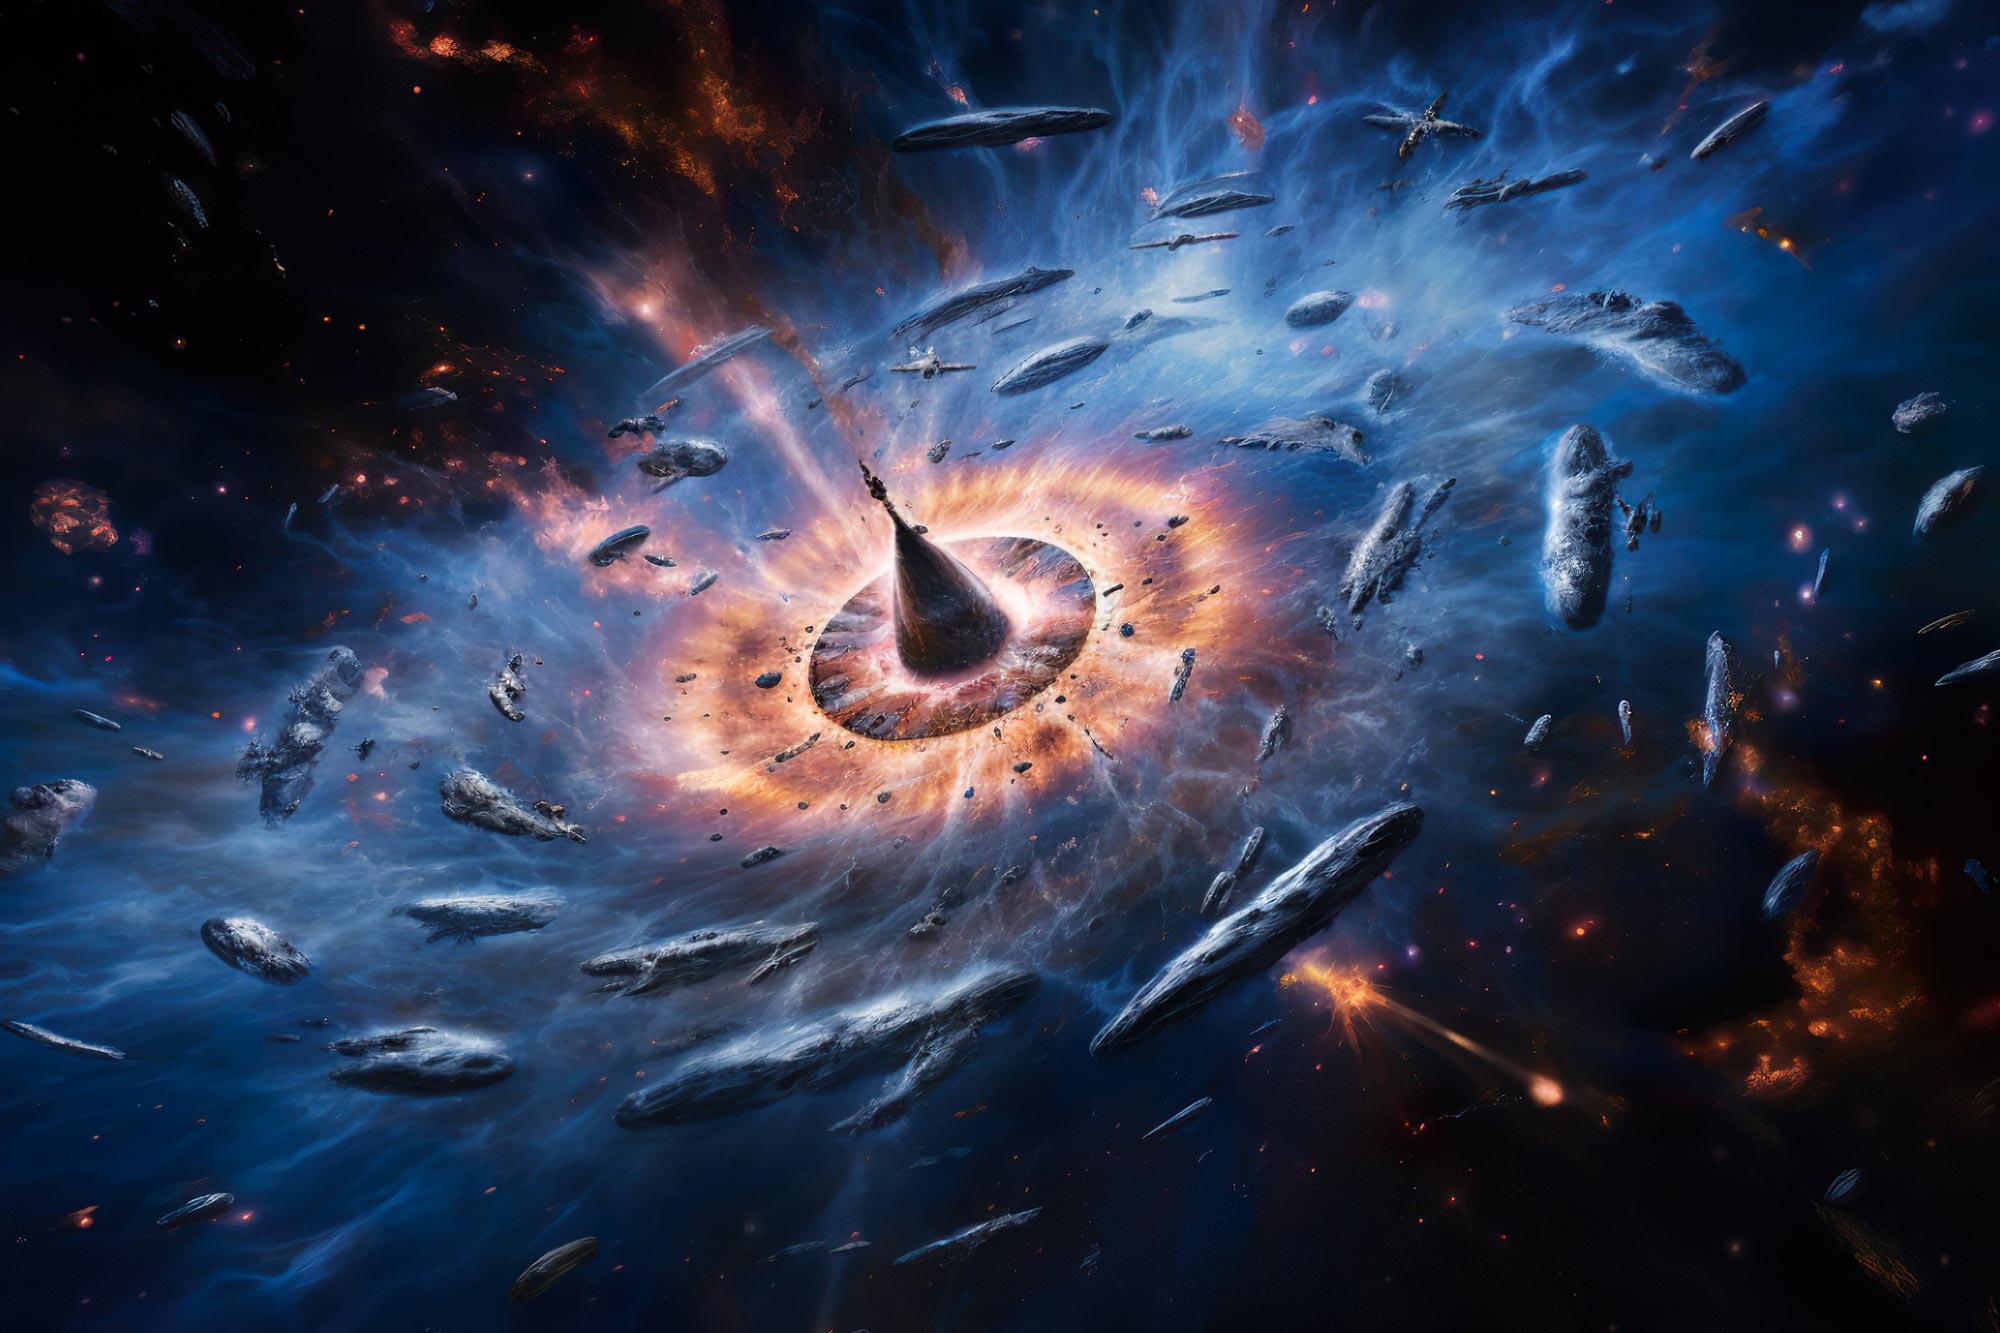 كان برنامج Quasar “Clocks” Show Universe أبطأ بمقدار 5 مرات بعد الانفجار الكبير بفترة وجيزة